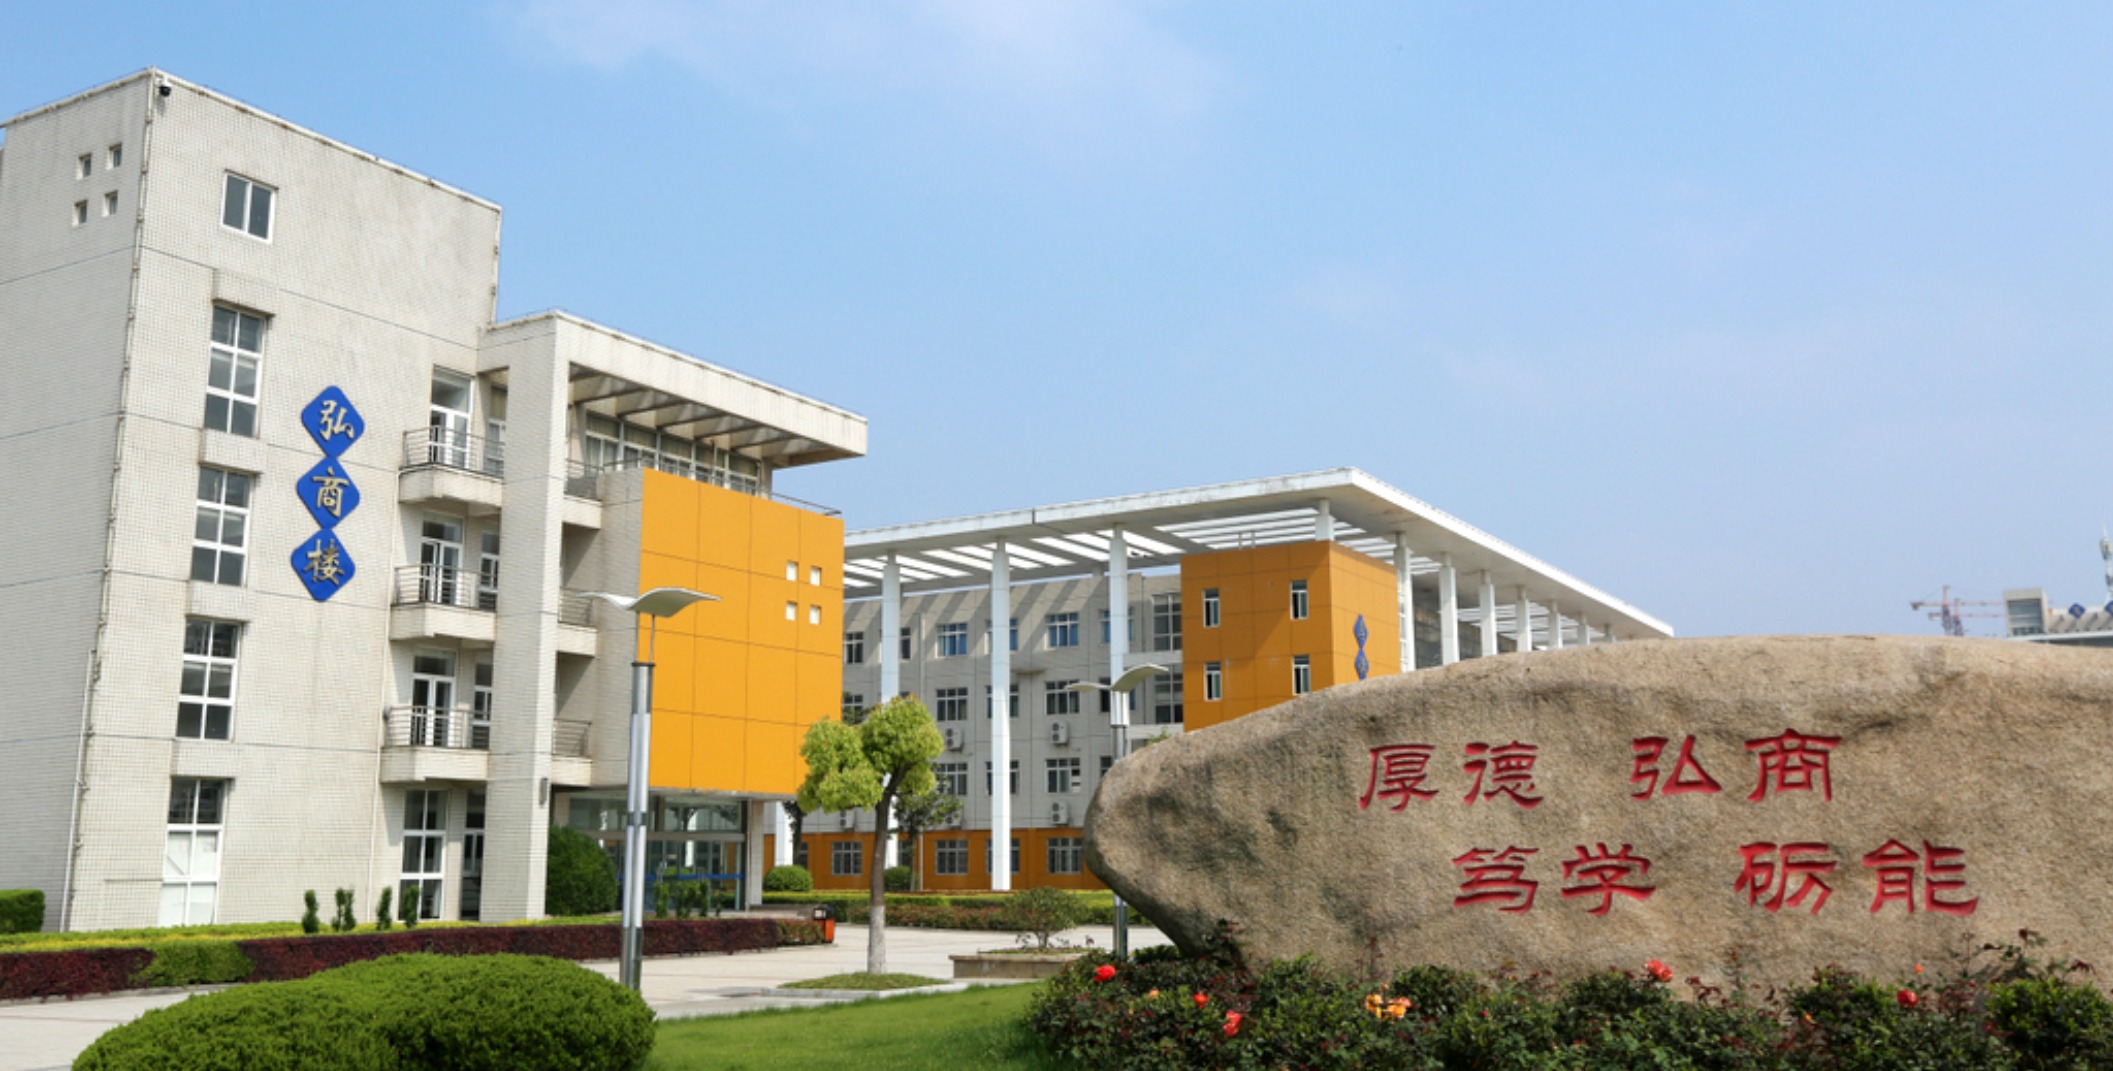 1997年学校被芜湖市委、芜湖市人民政府命名为“文明标兵单位”